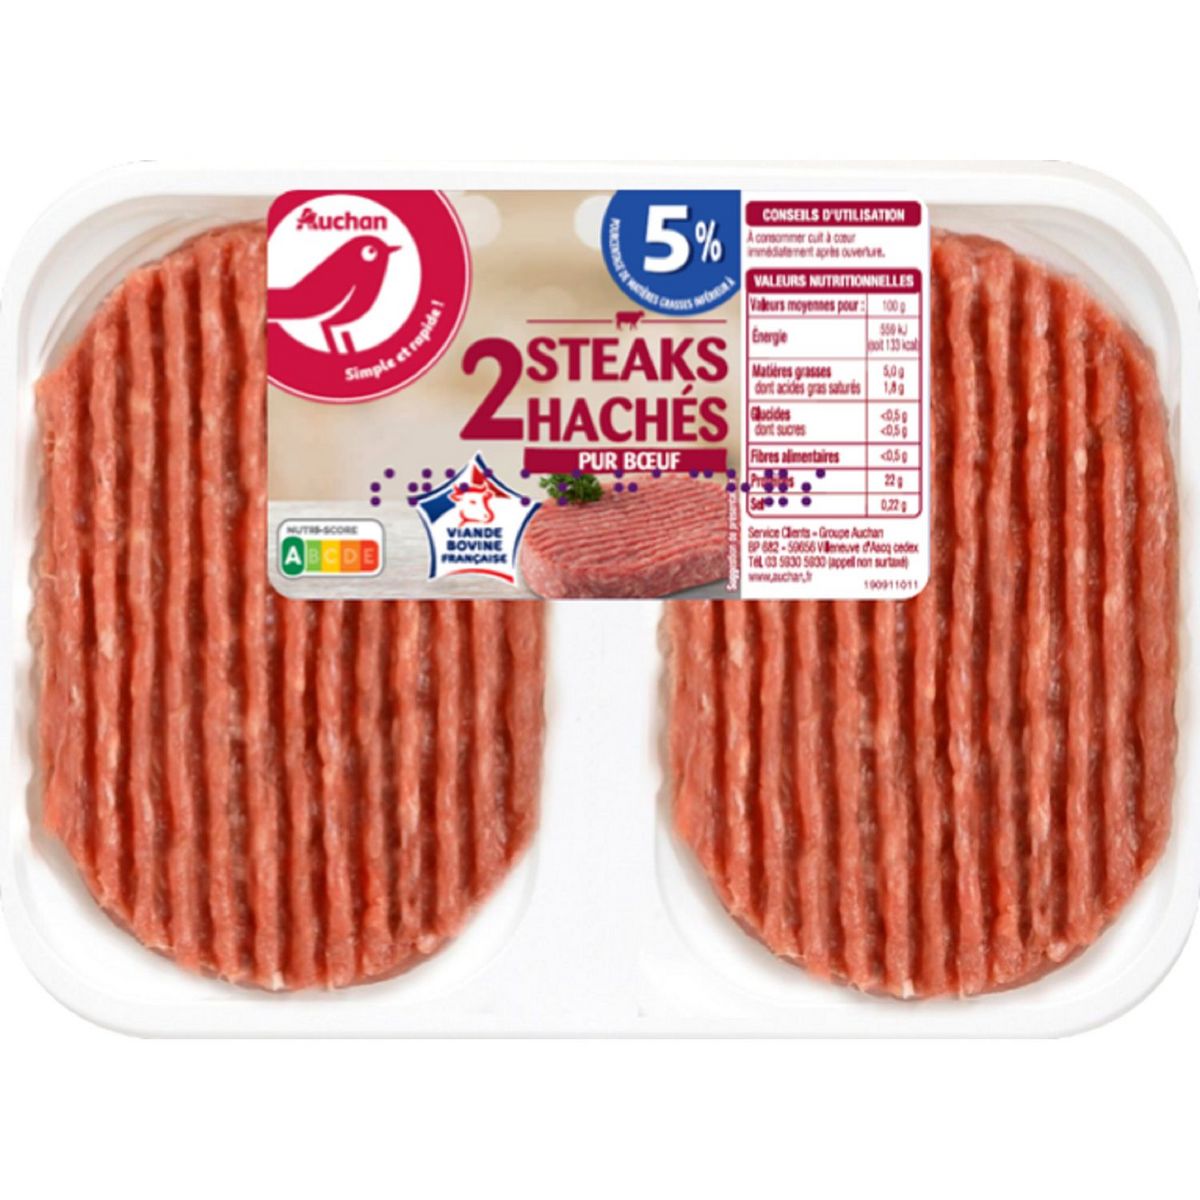 AUCHAN Steaks Hachés Pur Boeuf 5%mg 2 pièces 250g